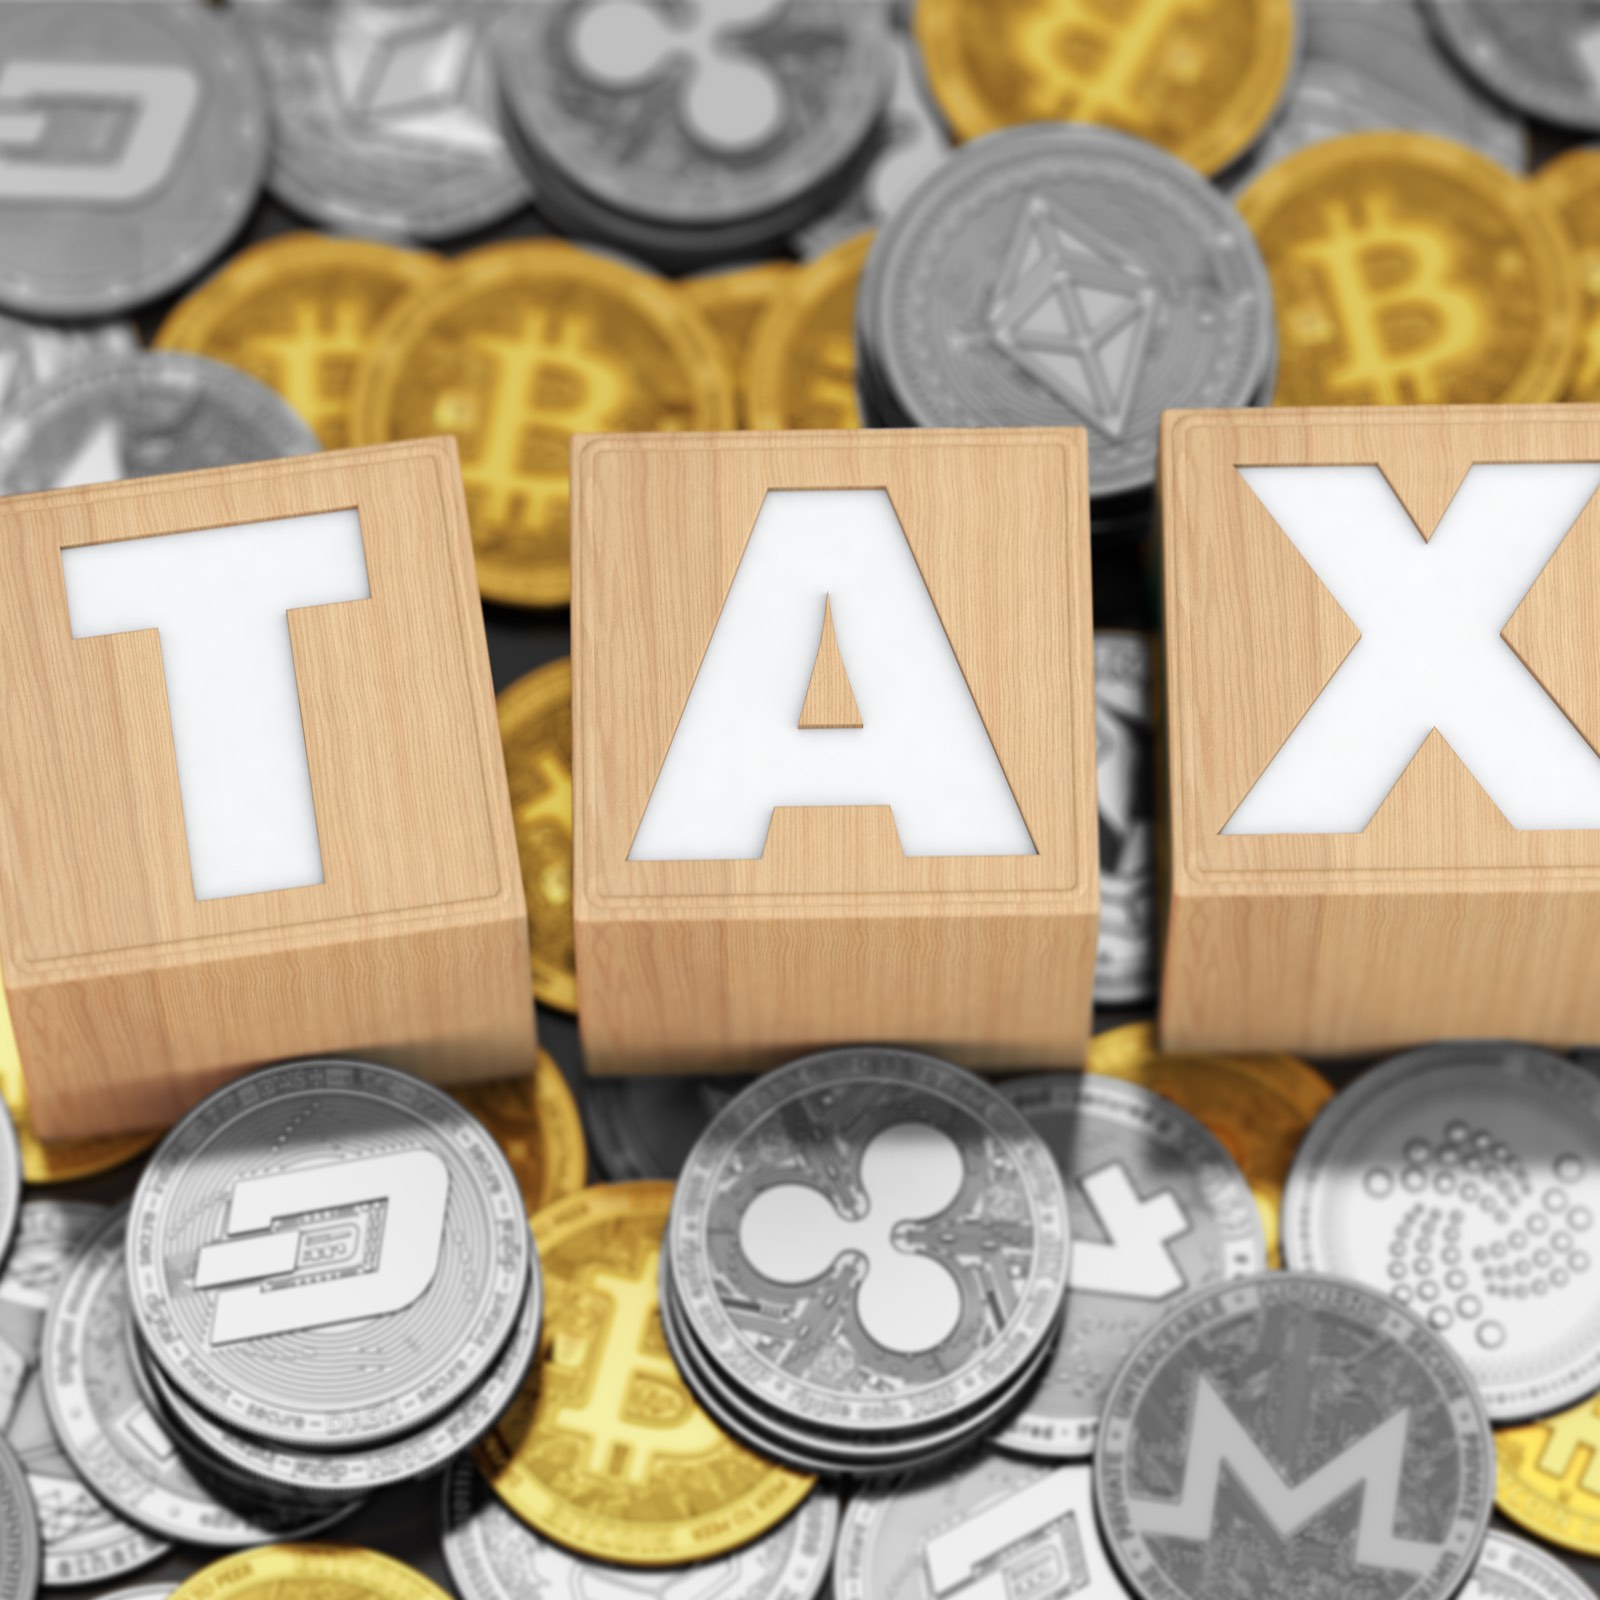 Bitfinex Starts Sharing Customer Tax Data with Authorities